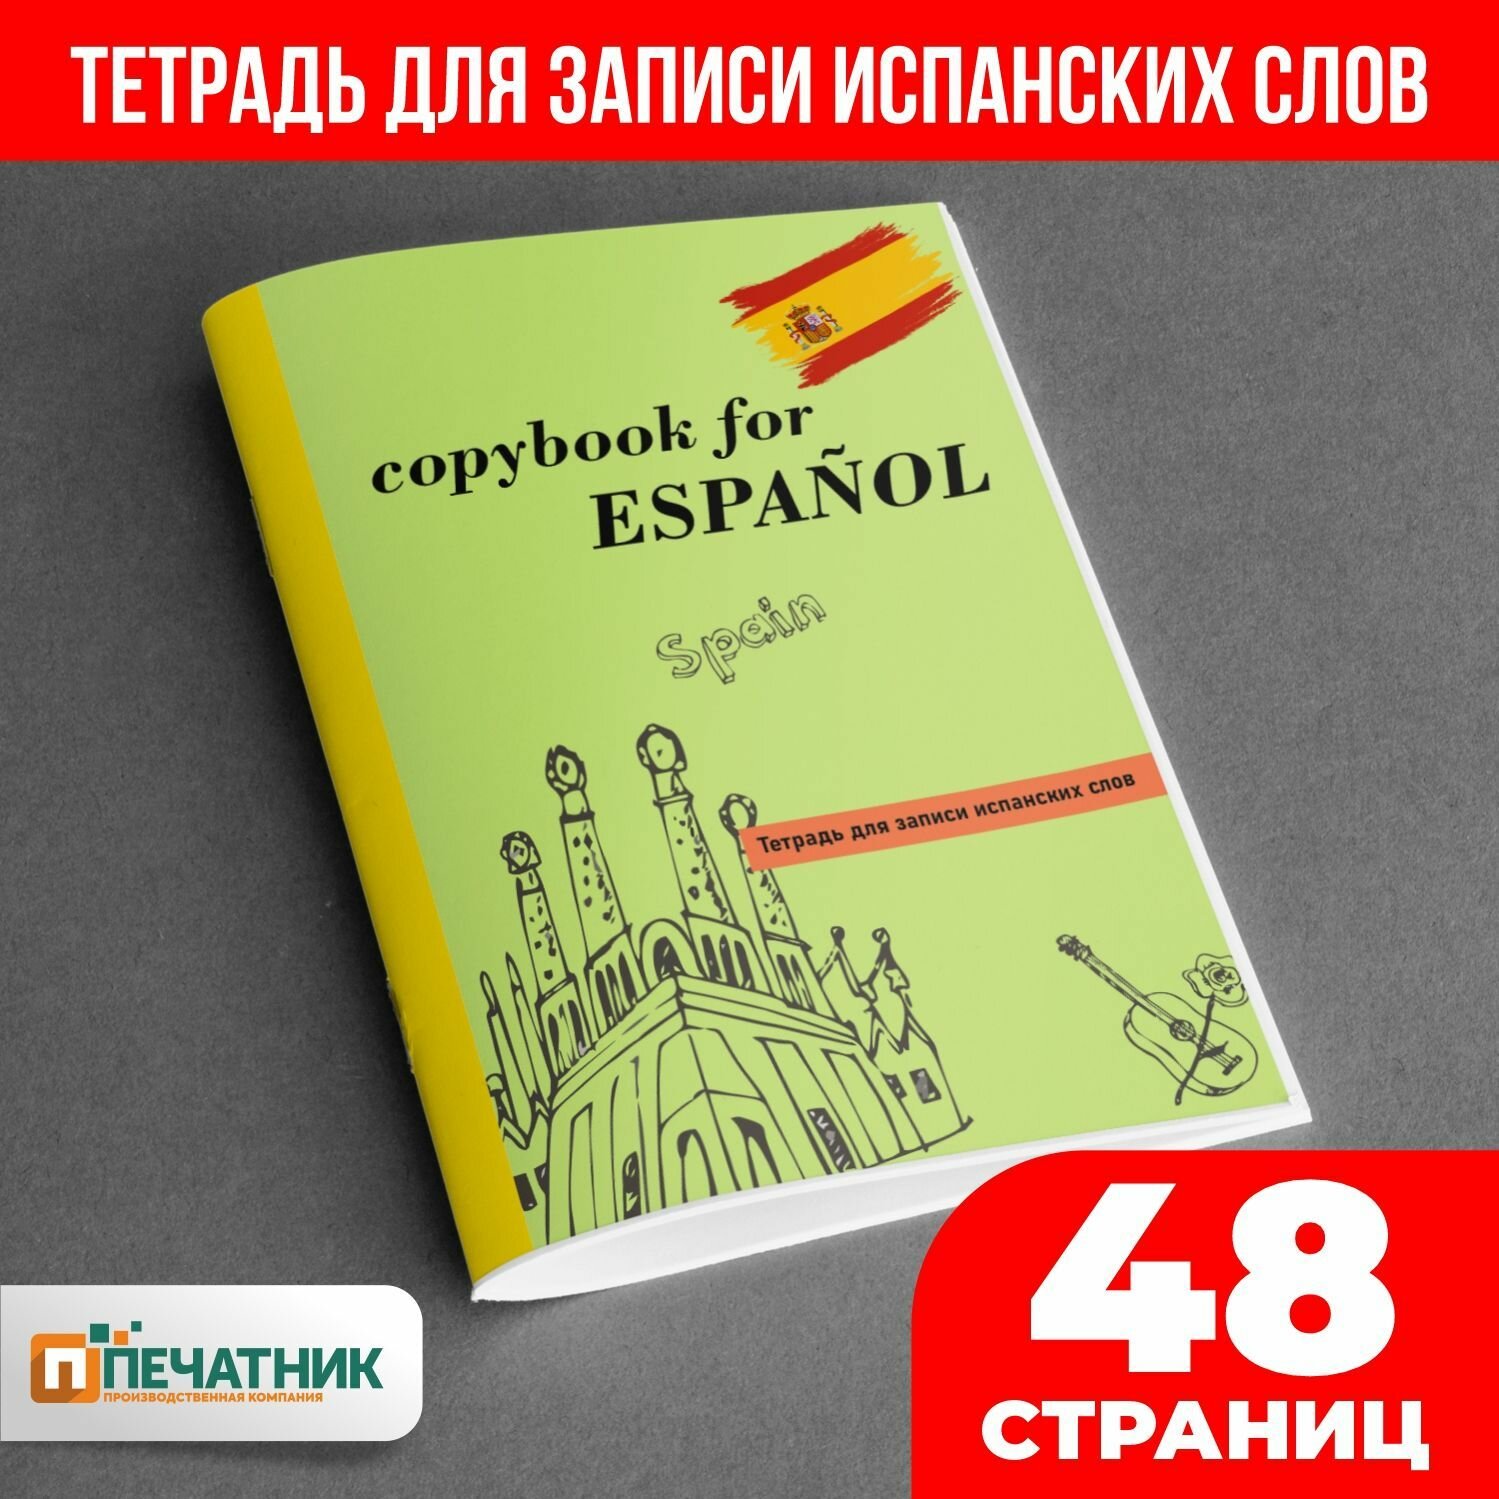 Тетрадь для иностранных слов "Испанский", 48 страниц, Печатник